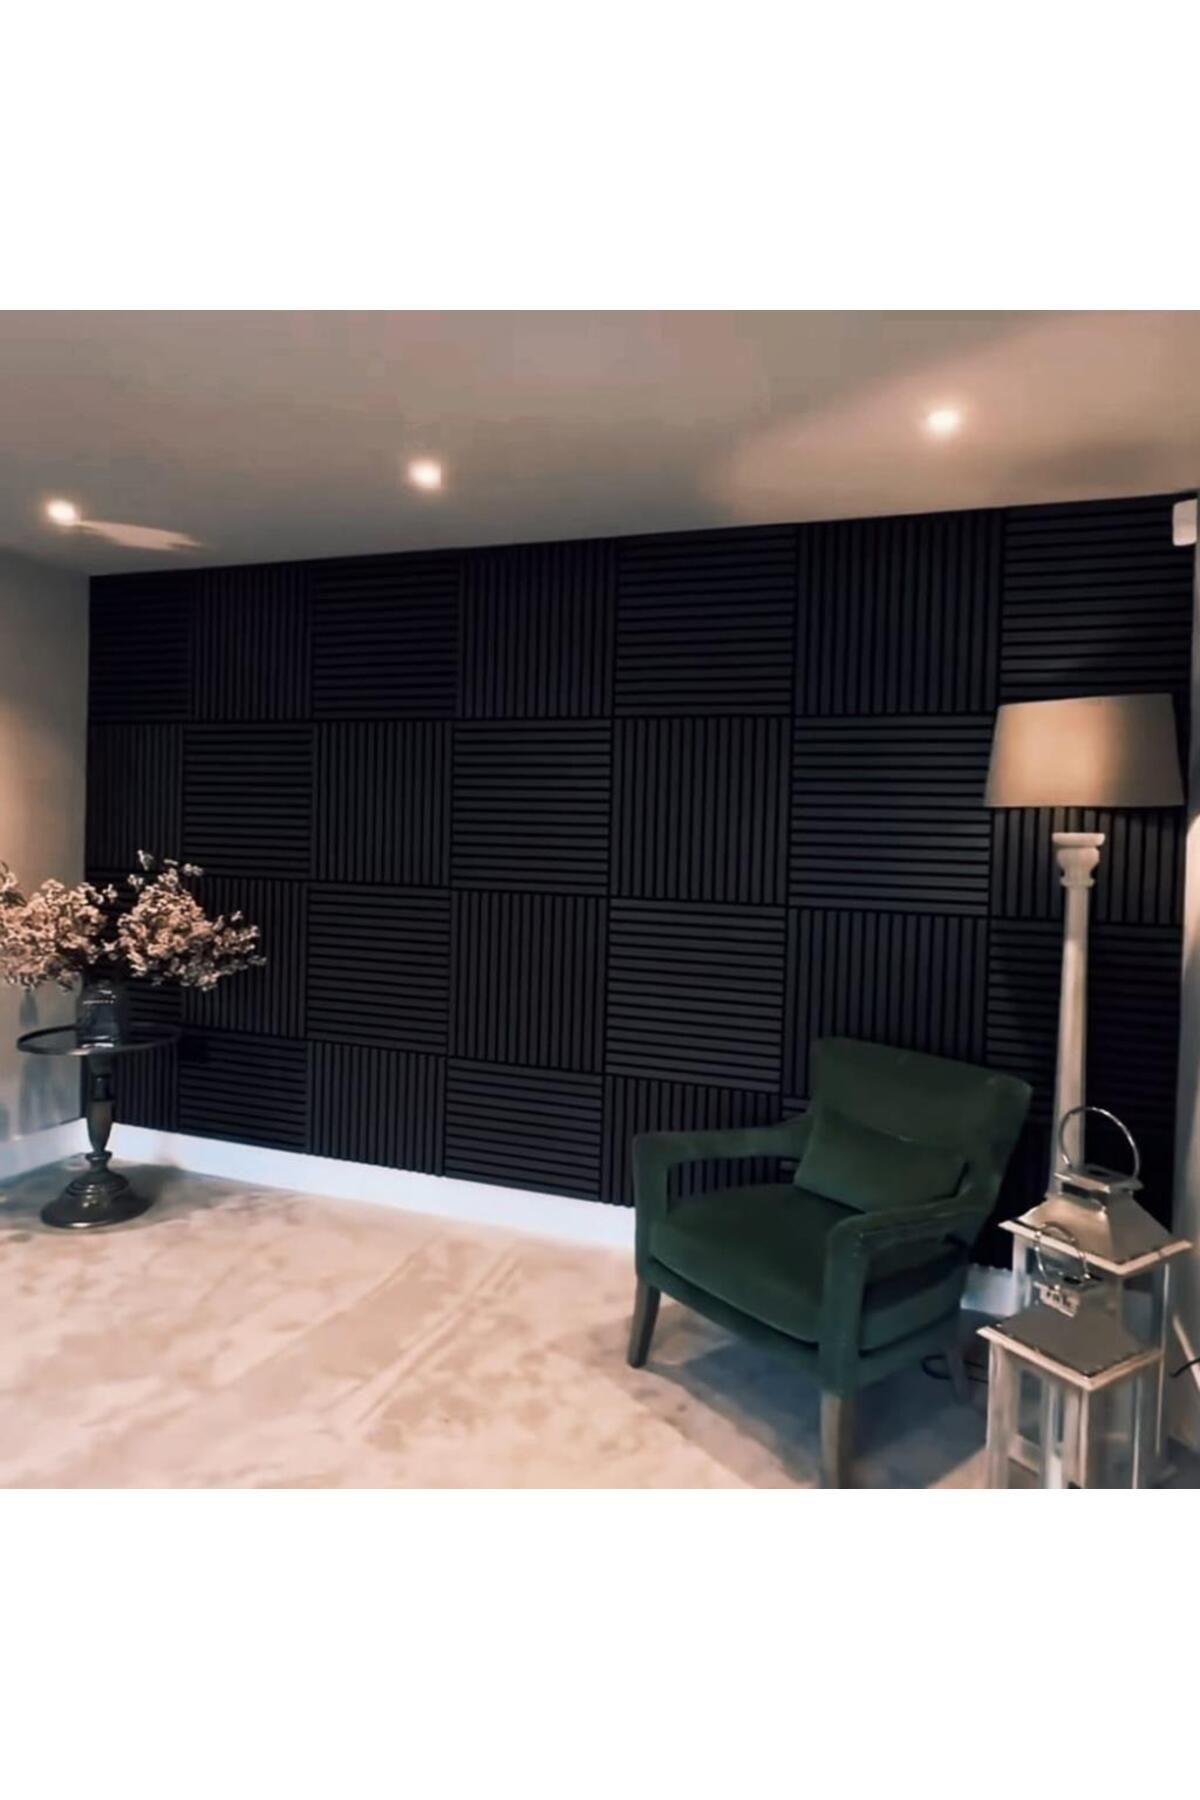 Renkli Duvarlar 50x50cm 1 Adet Siyah Renk Akustik Panel 3mm Keçe Ve 8mm Mdflam Salon Ofis Duvar Çıtası Paneli Cide